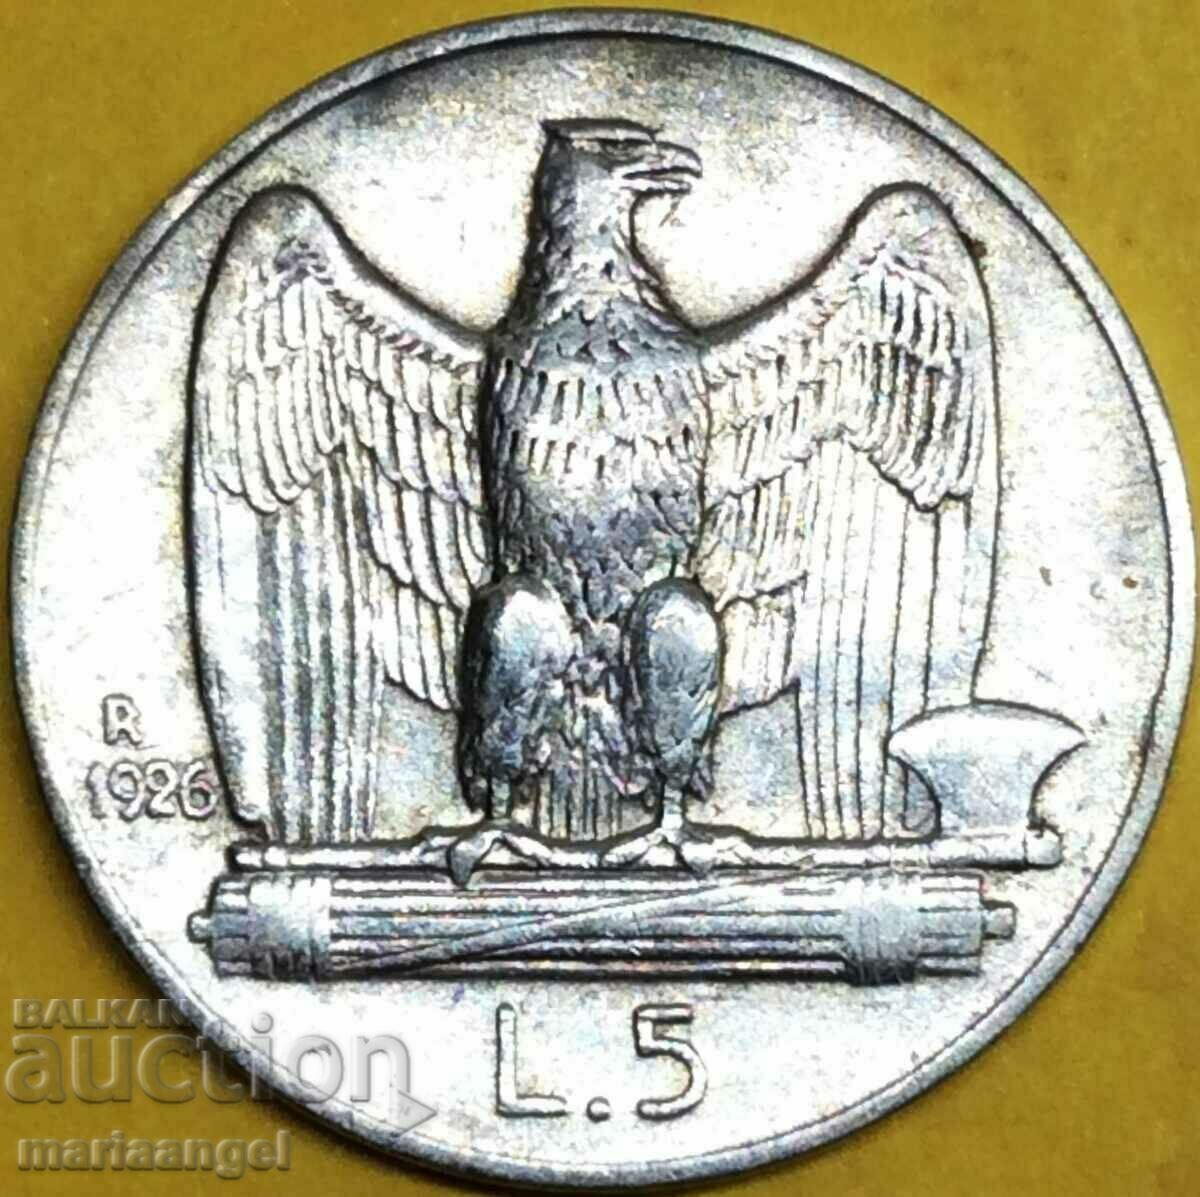 5 λίρες 1926 Ιταλία ασήμι - σπάνιο έτος